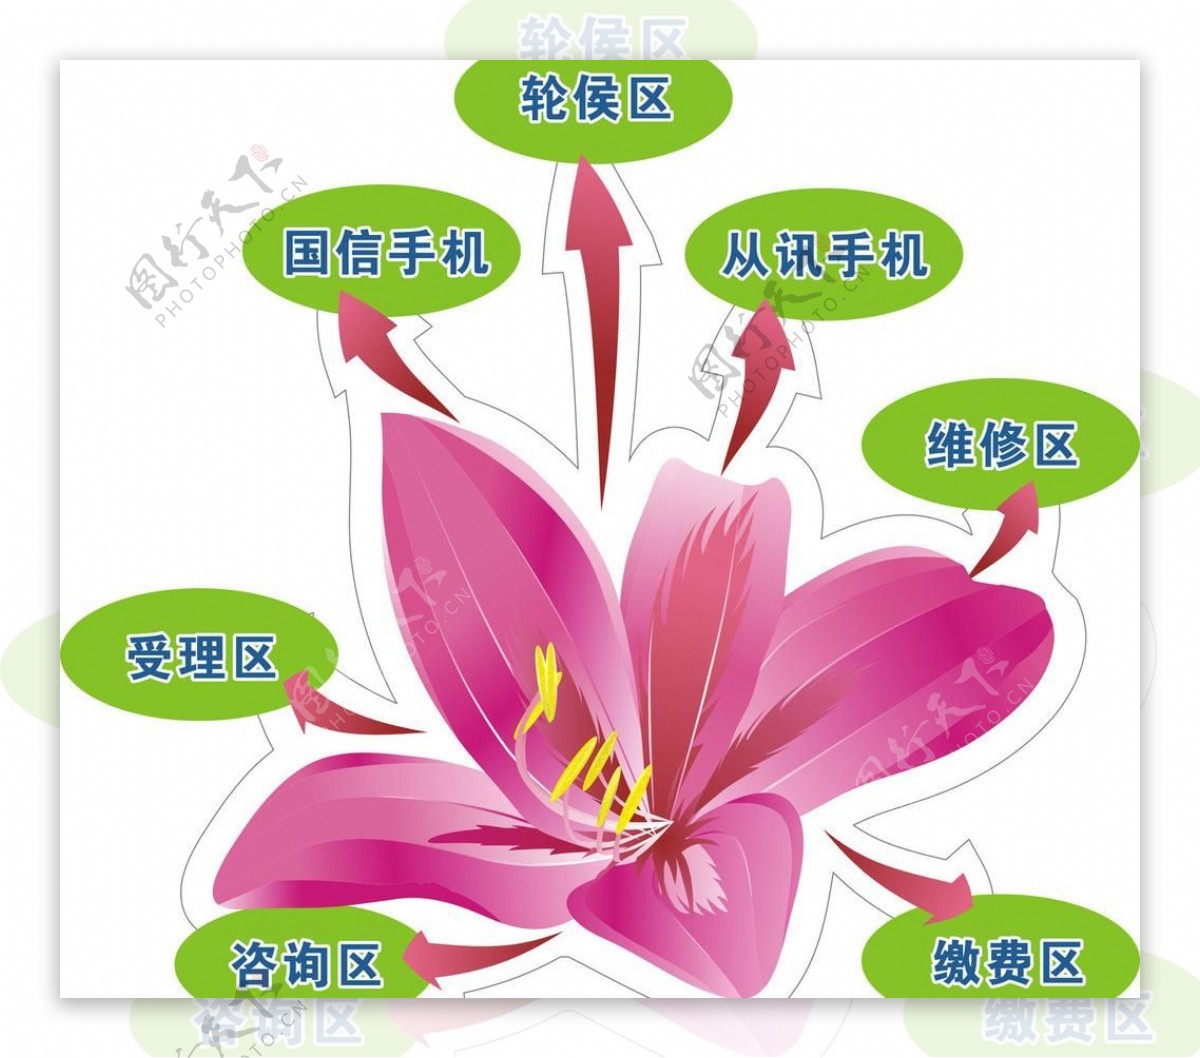 紫荆花指示牌图片